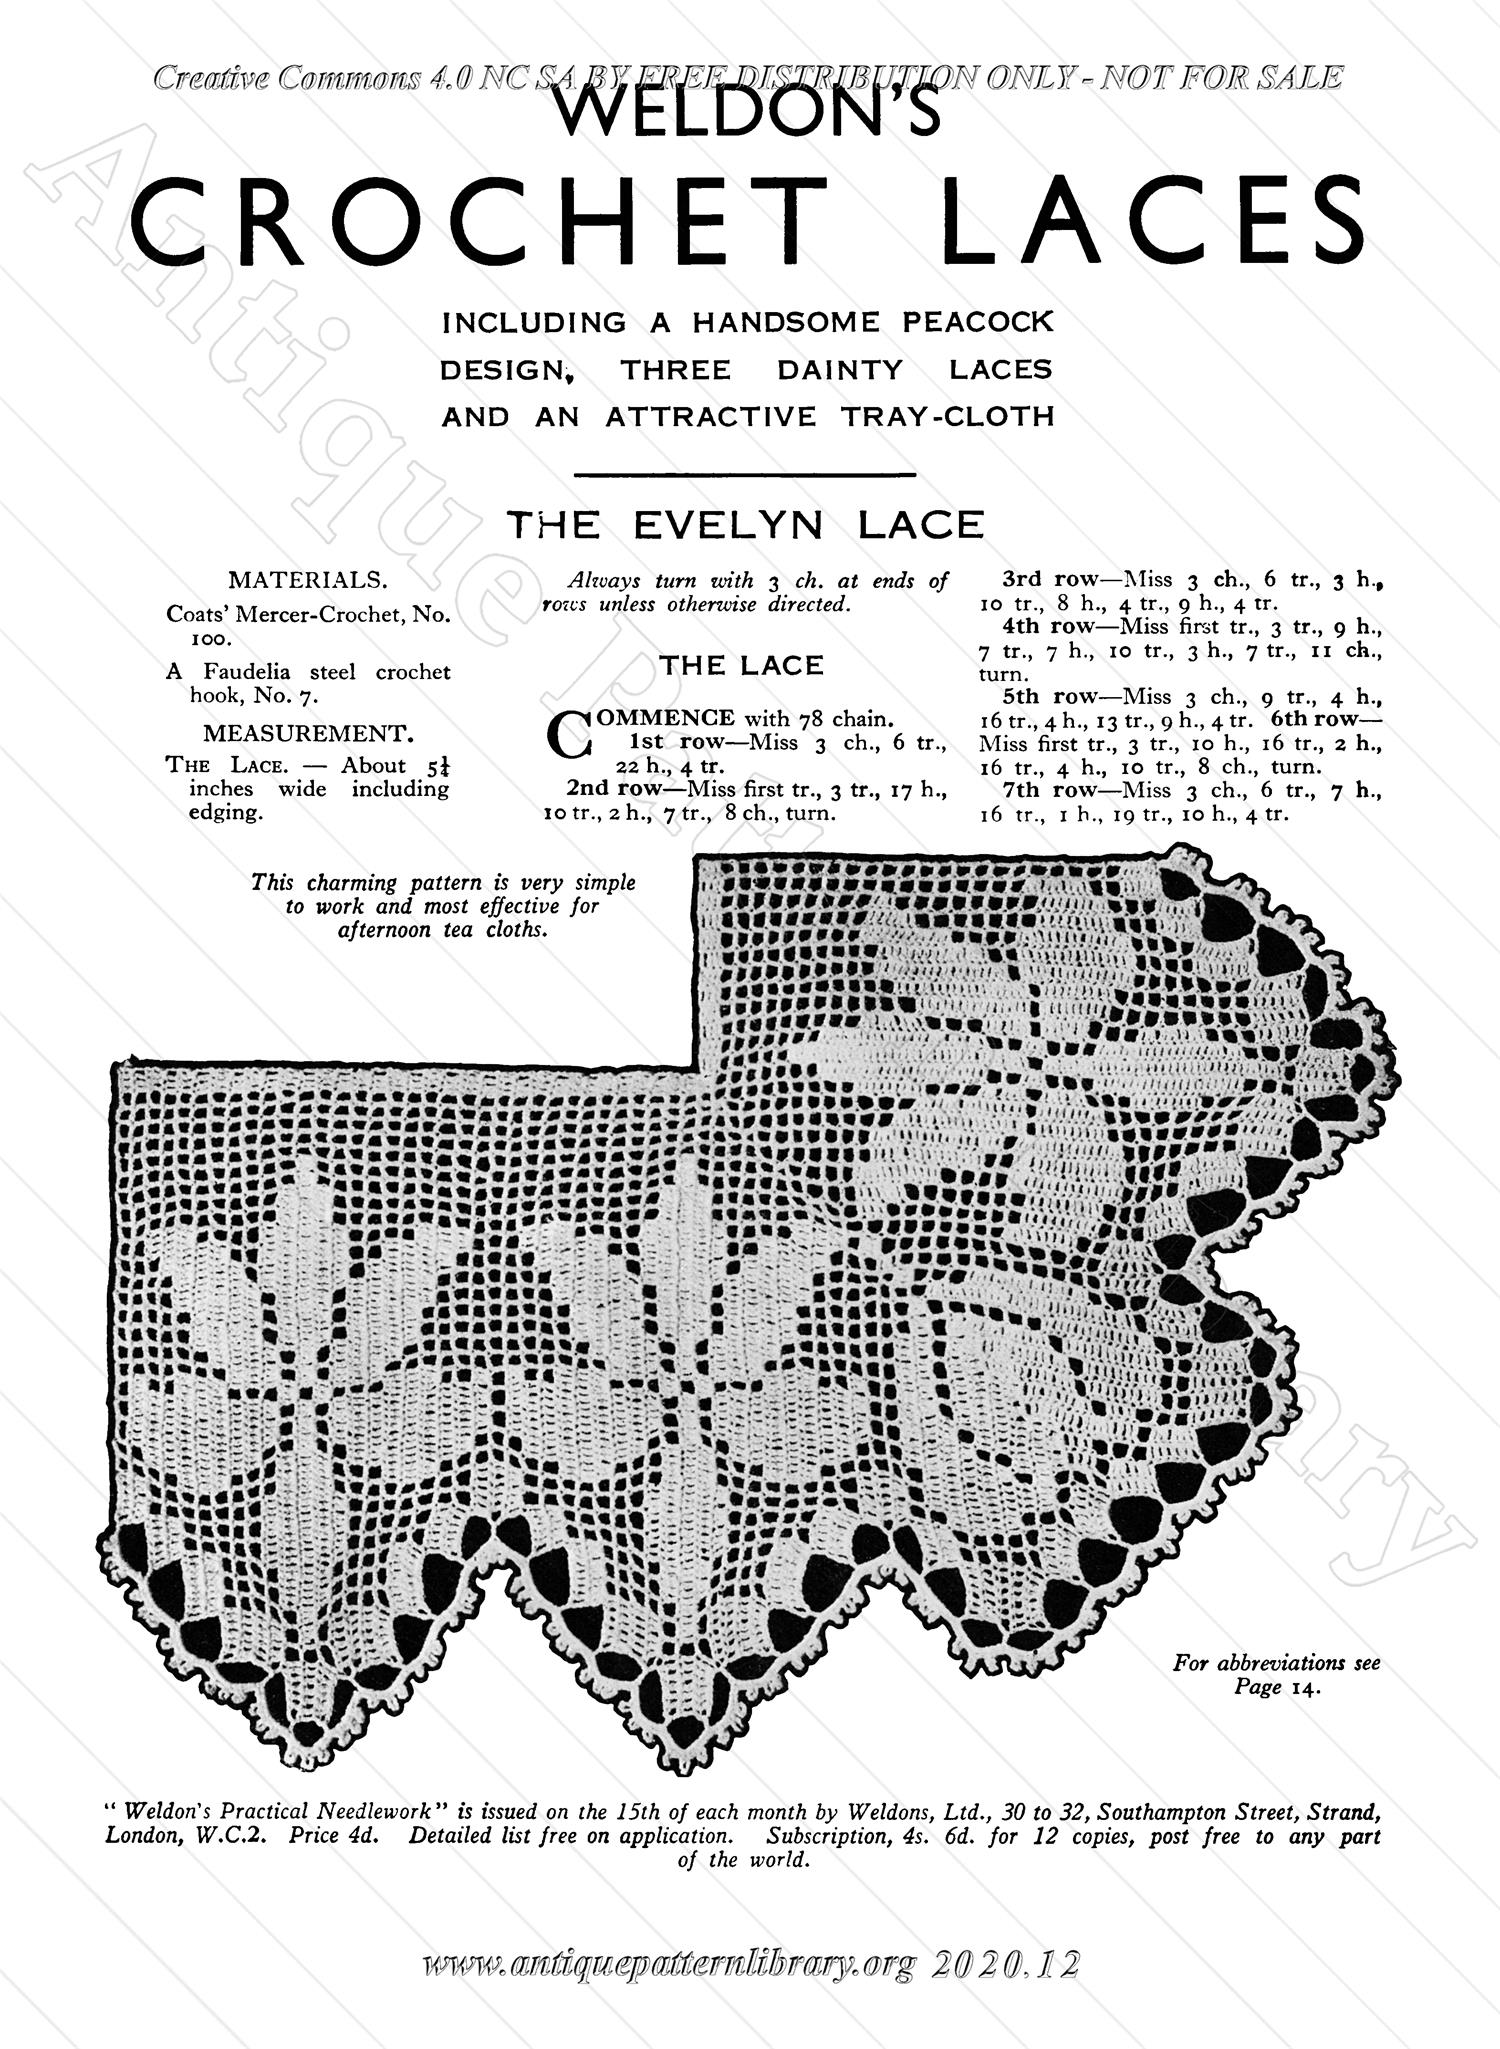 K-PR001 Crochet Laces